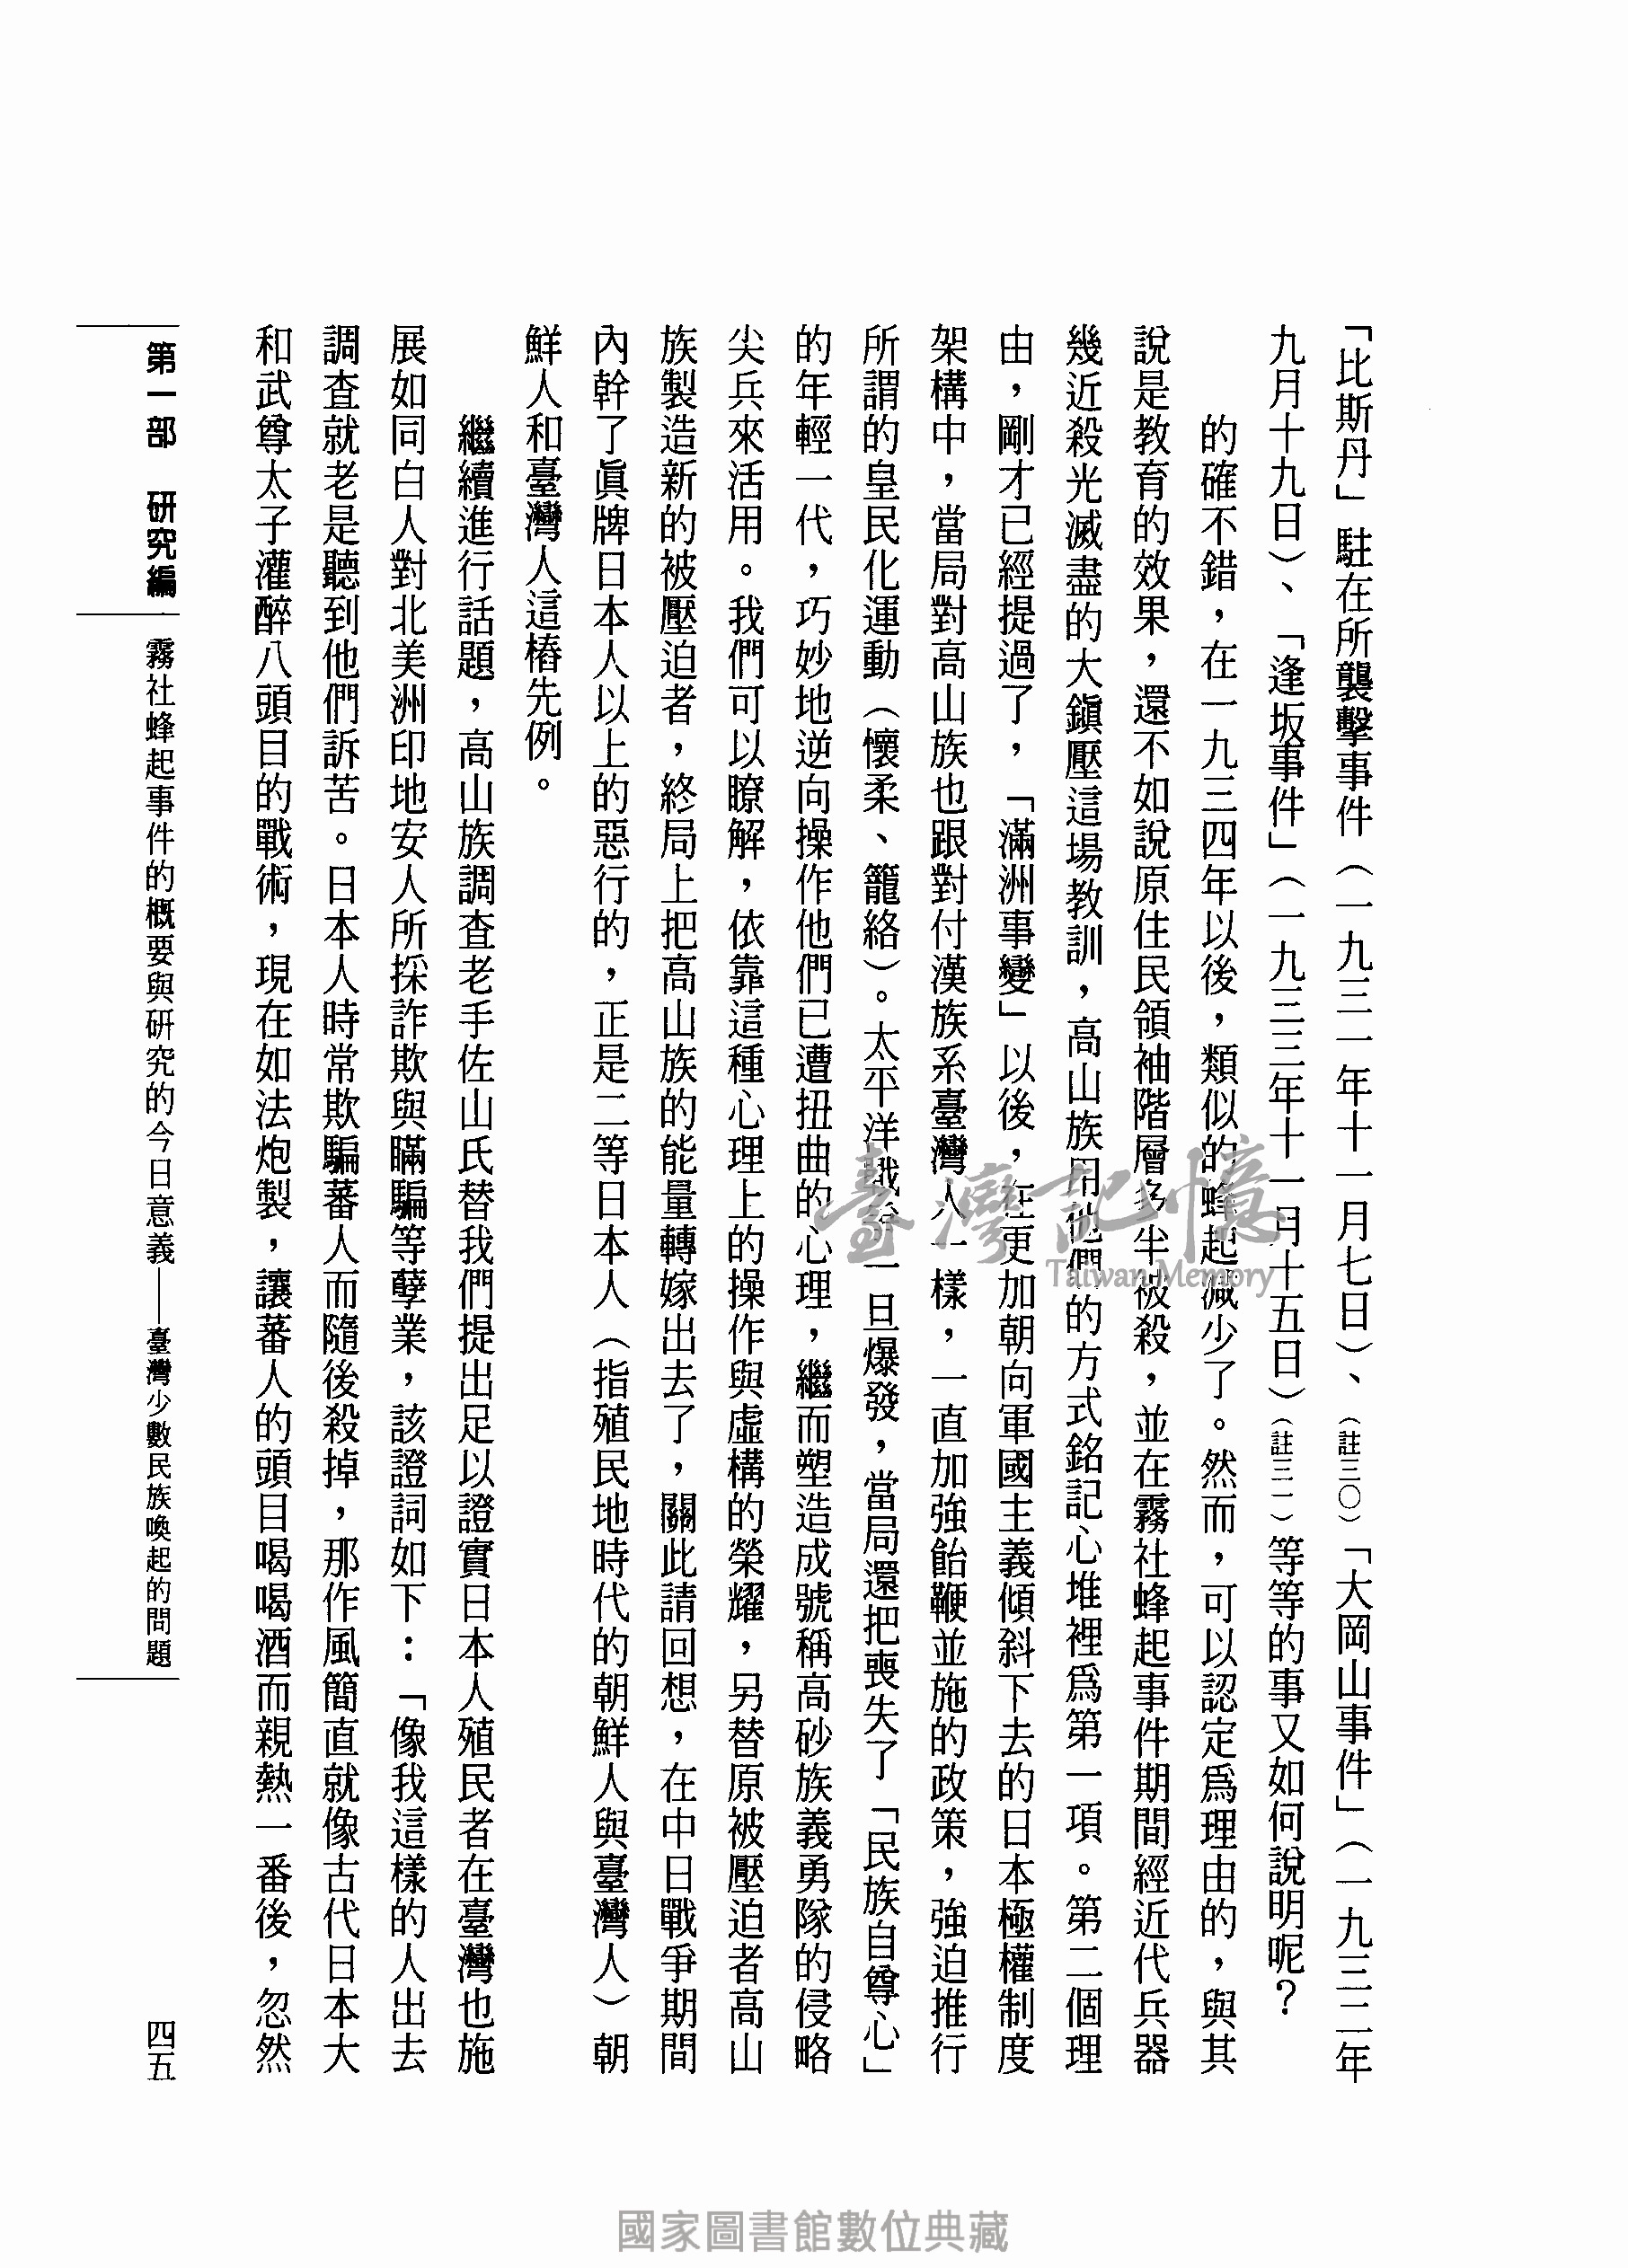 買い保障できる 台湾霧社蜂起事件 研究と資料□戴國煇・編著□1981年